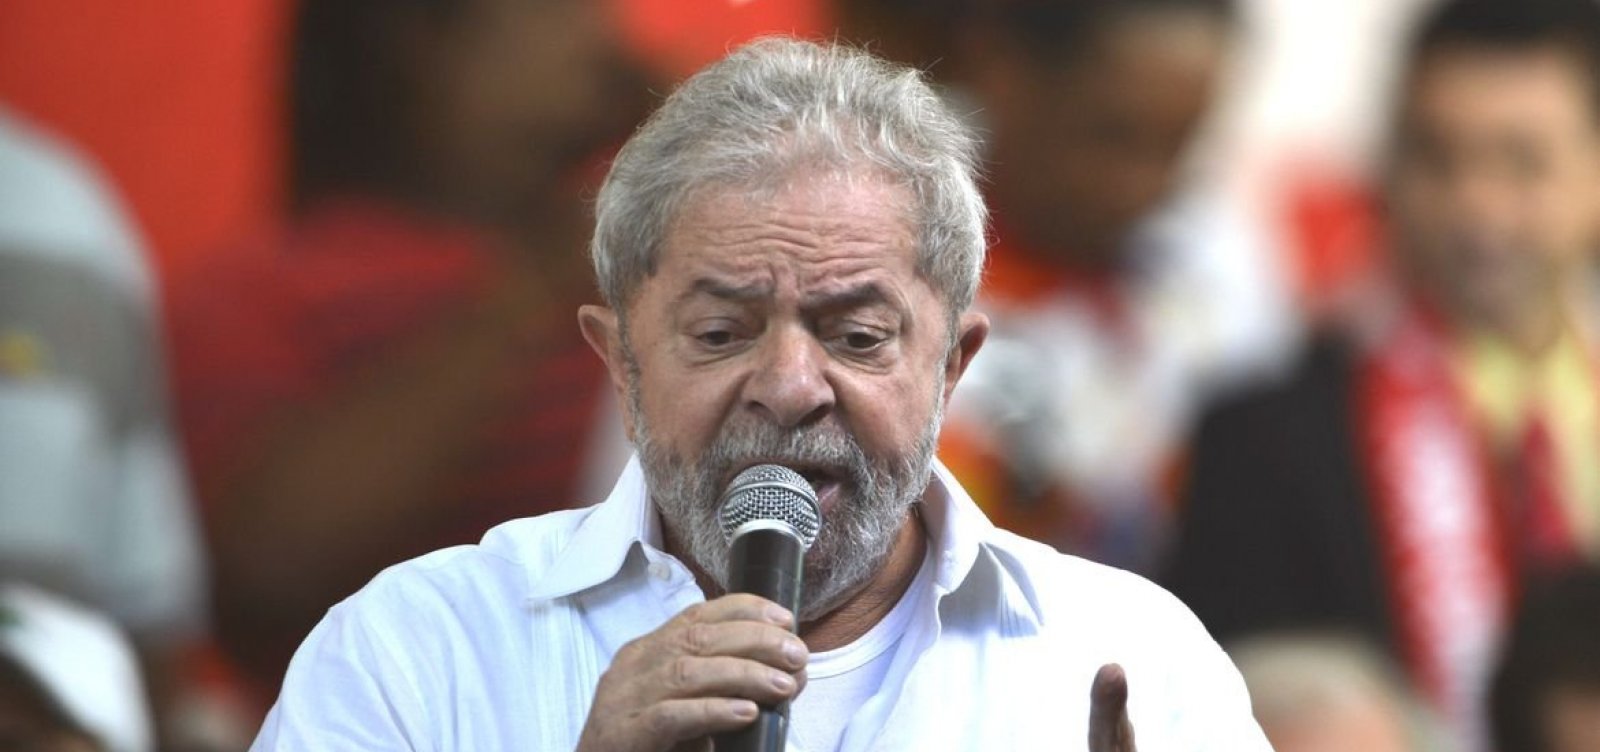 Carro de Lula escapa de cerco de bolsonaristas no interior de São Paulo